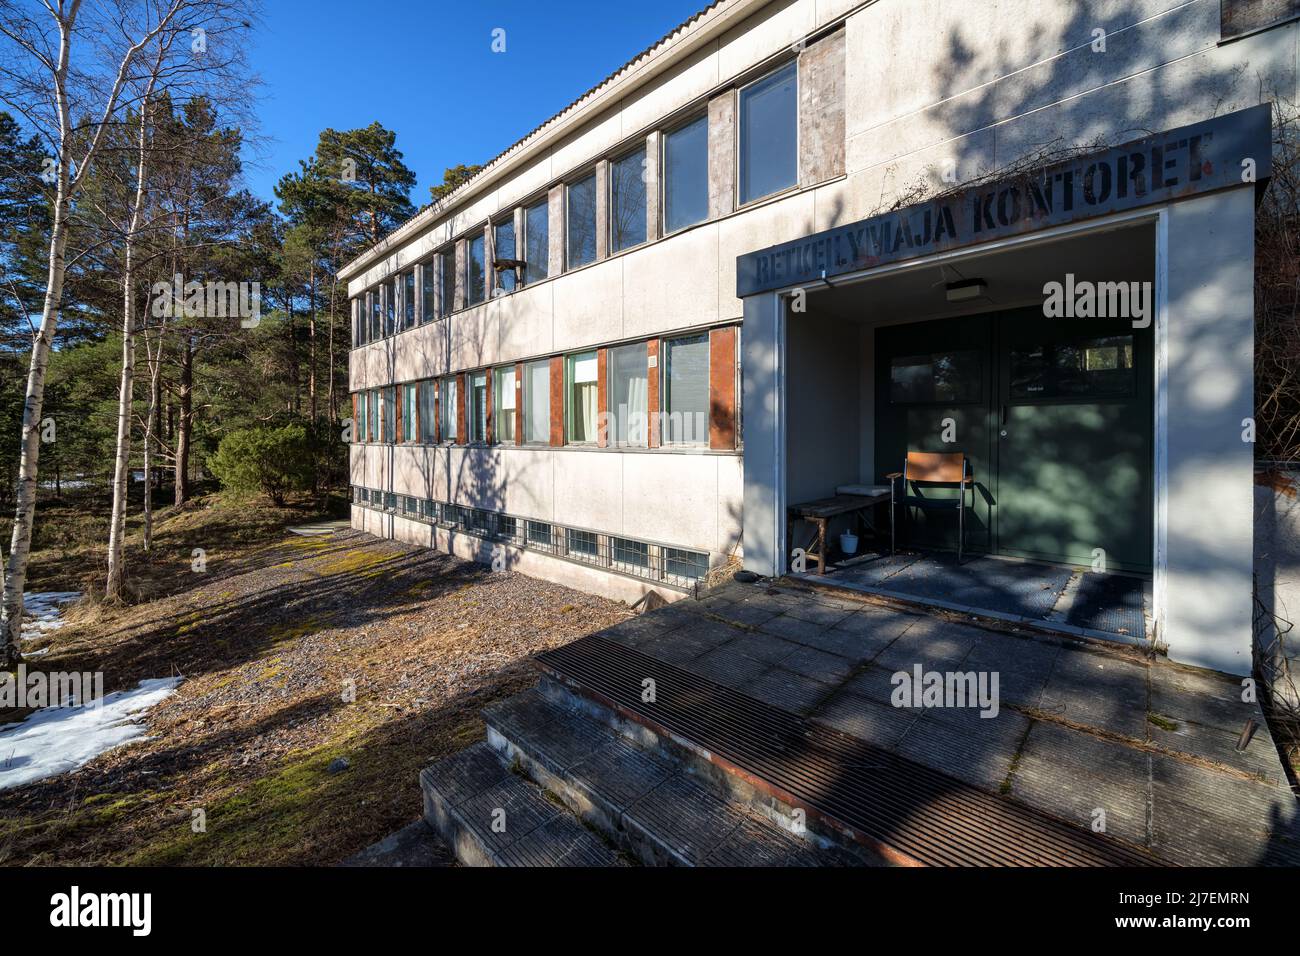 Hébergement à 'Retkeilymaja Kontoret' sur l'île de Jussarö, Raasepori, Finlande Banque D'Images